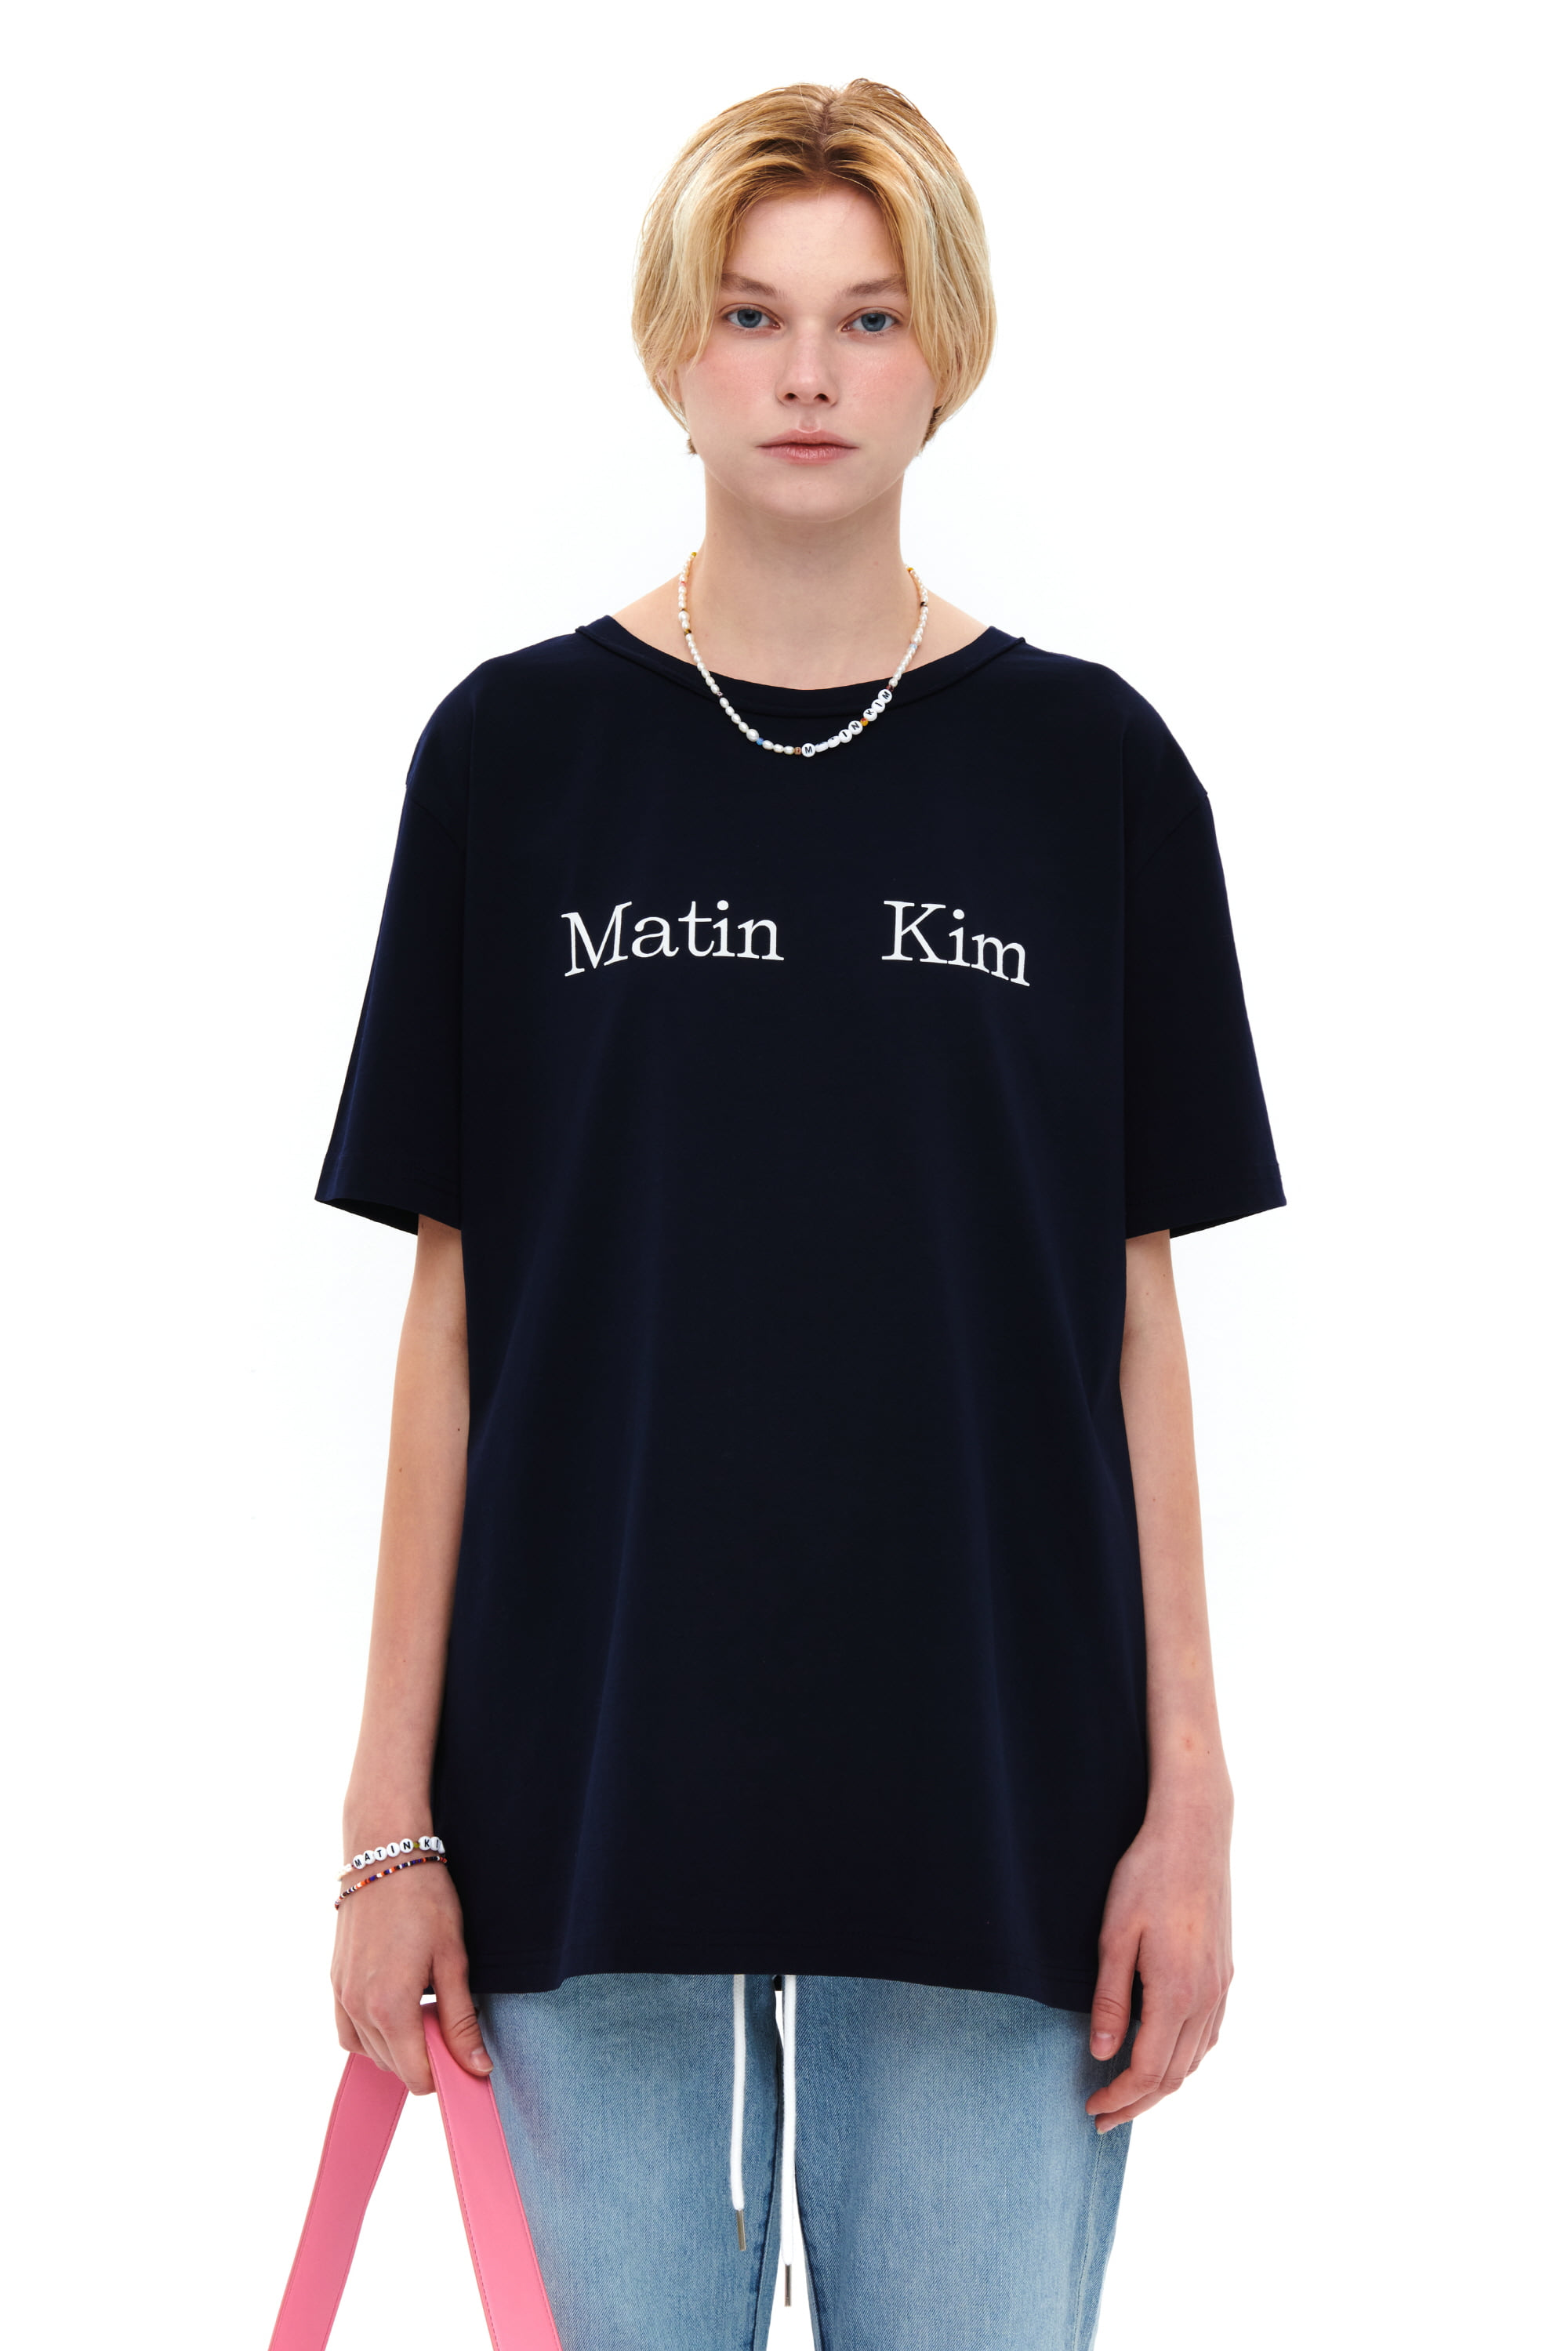 MATIN KIM LOGO T-SHIRT IN BLACK - MATINKIM